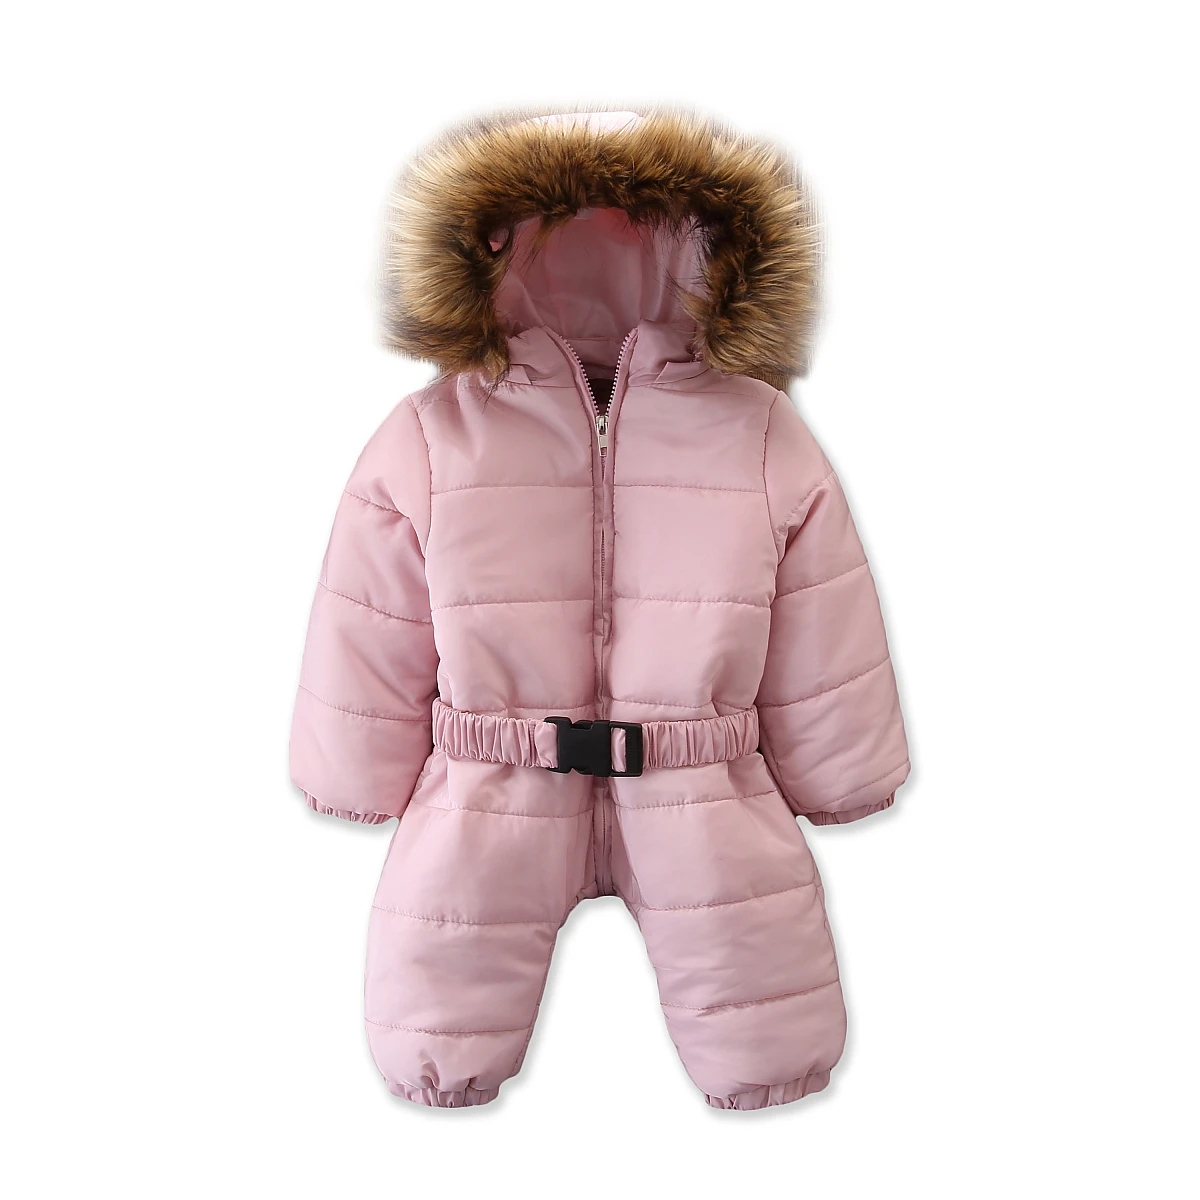 Pudcoco/ г. Зимняя теплая плотная одежда для снежной погоды зимний комбинезон-жакет для маленьких мальчиков и девочек детская верхняя одежда с капюшоном, комбинезон, пальто, наряд